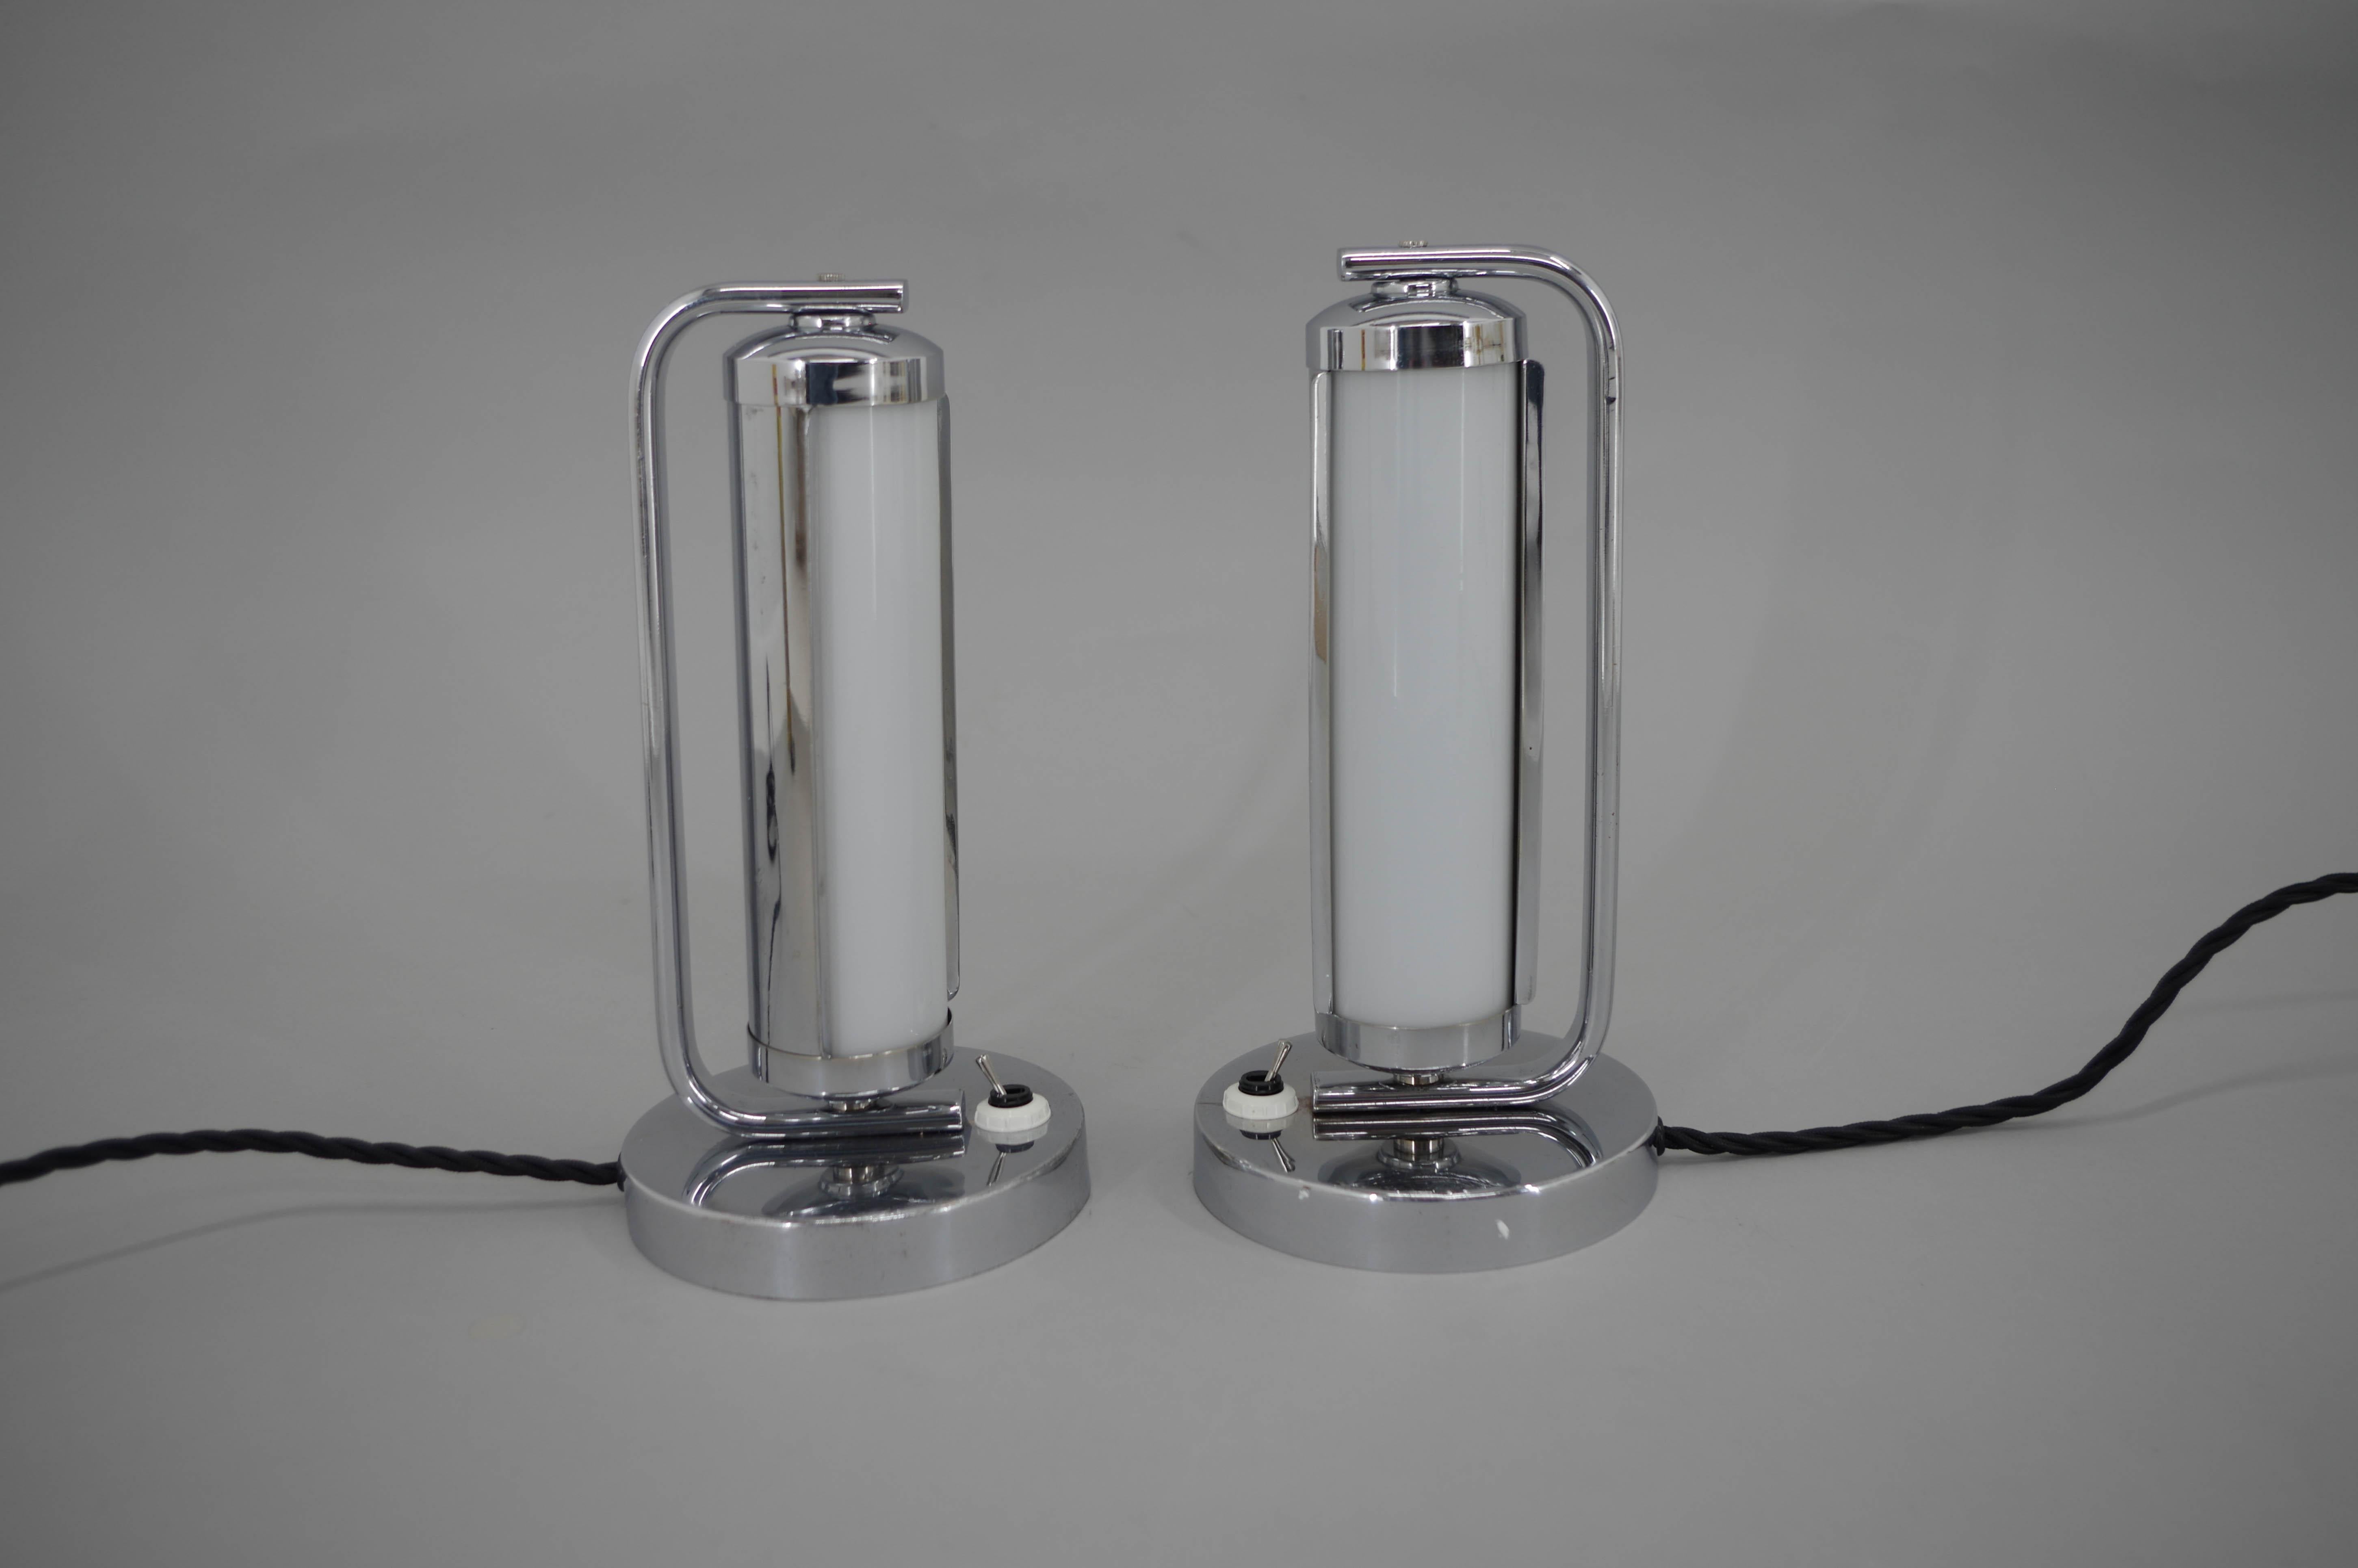 Zwei Art Deco/Funktionalistische Tischlampen mit Röhrenglas und drehbarer Chromabdeckung.
Restauriert, gereinigt, poliert, neu verkabelt
1x40W, E12-E14 Glühbirne
Inklusive US-Steckeradapter